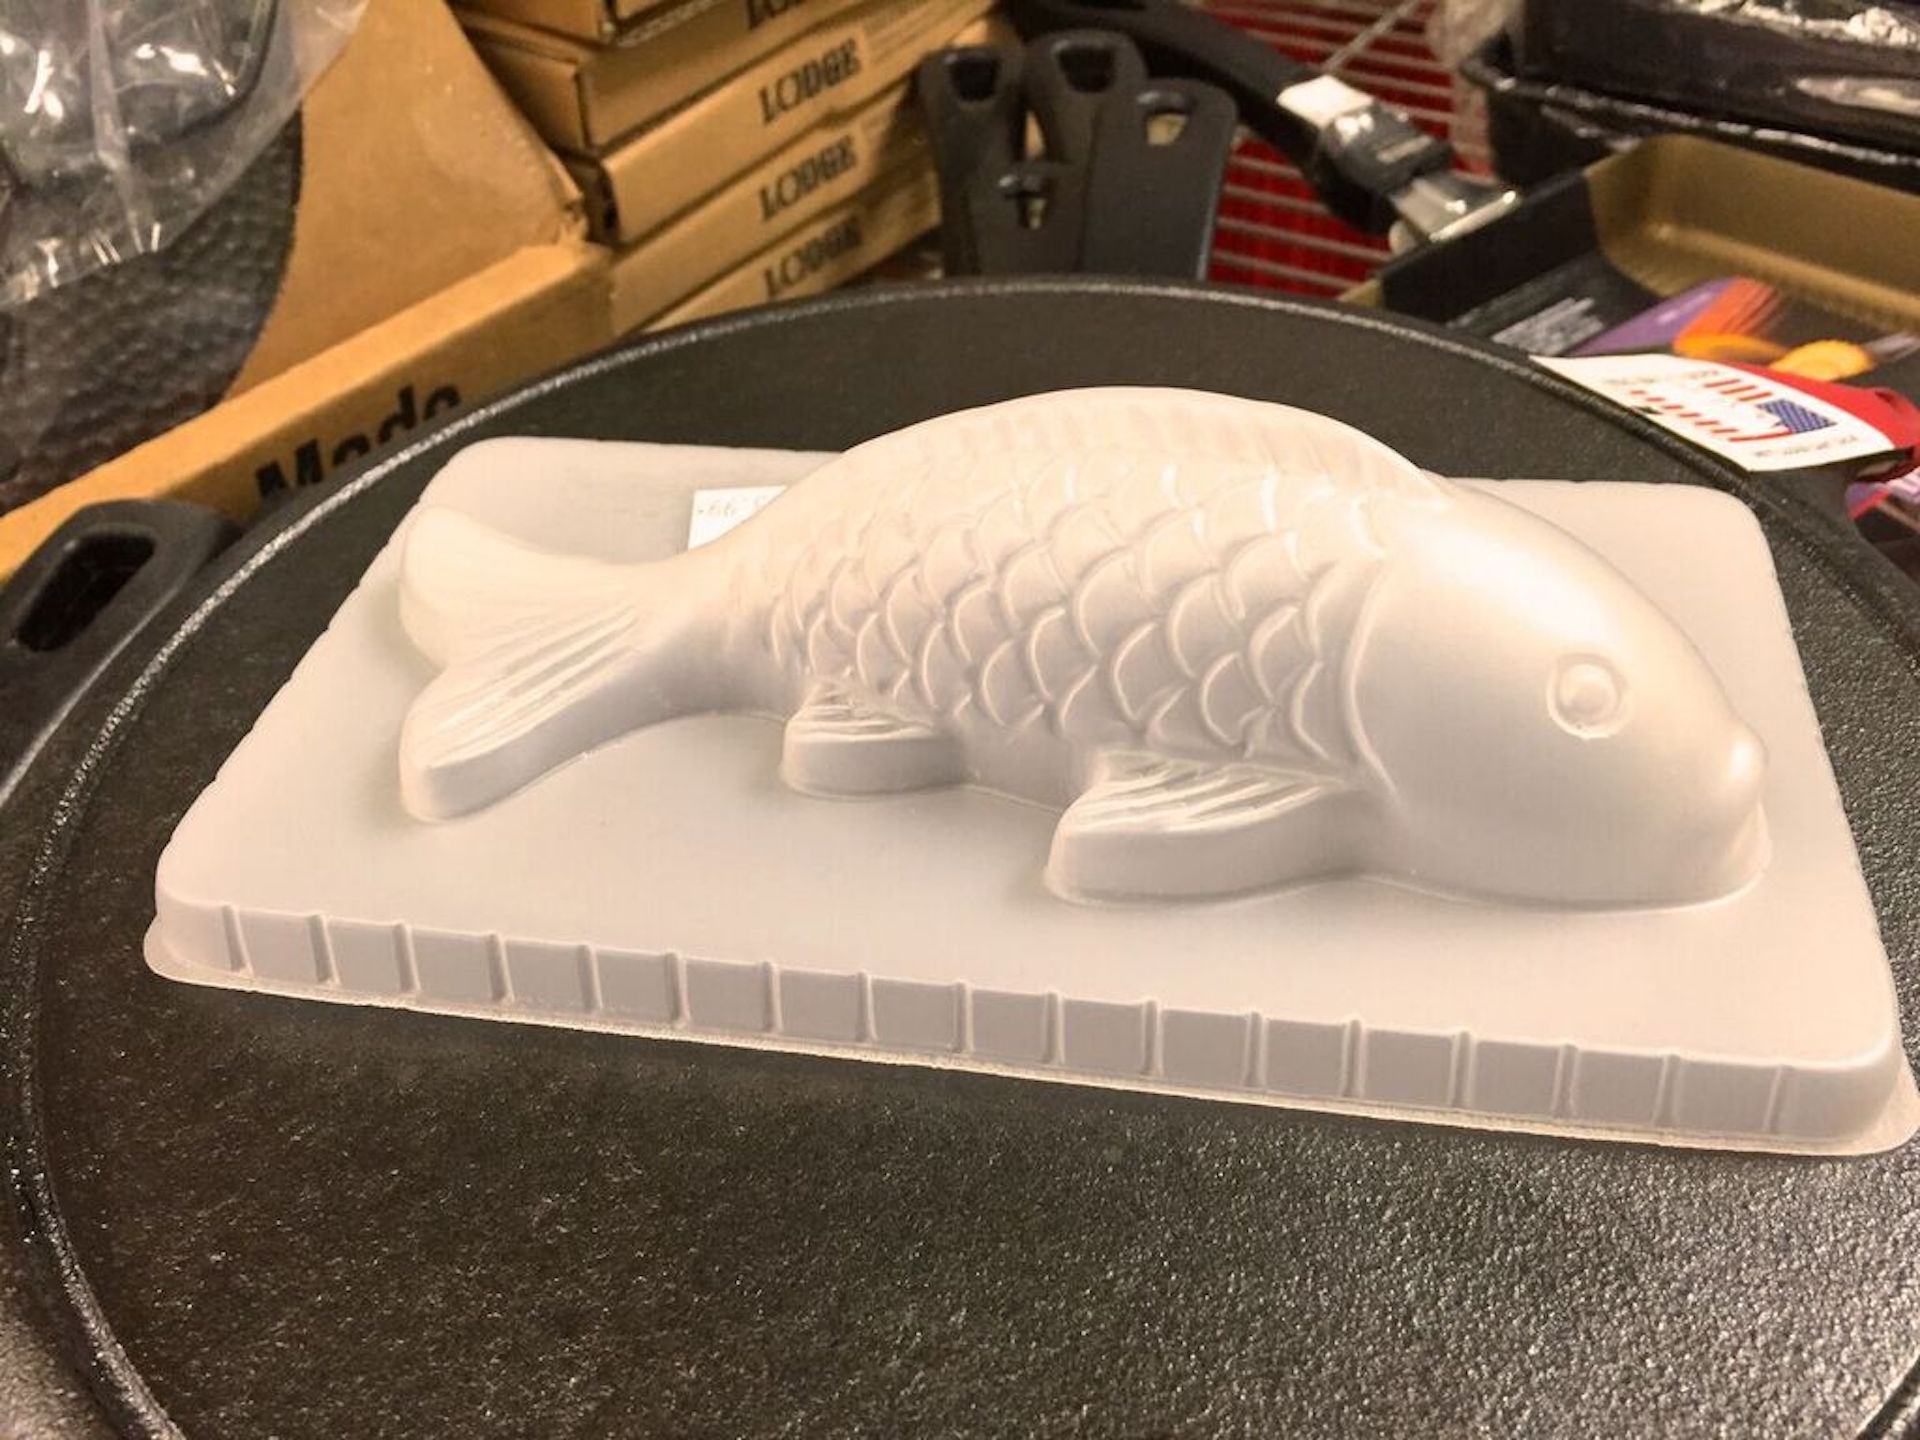 Fish-shaped cake mold